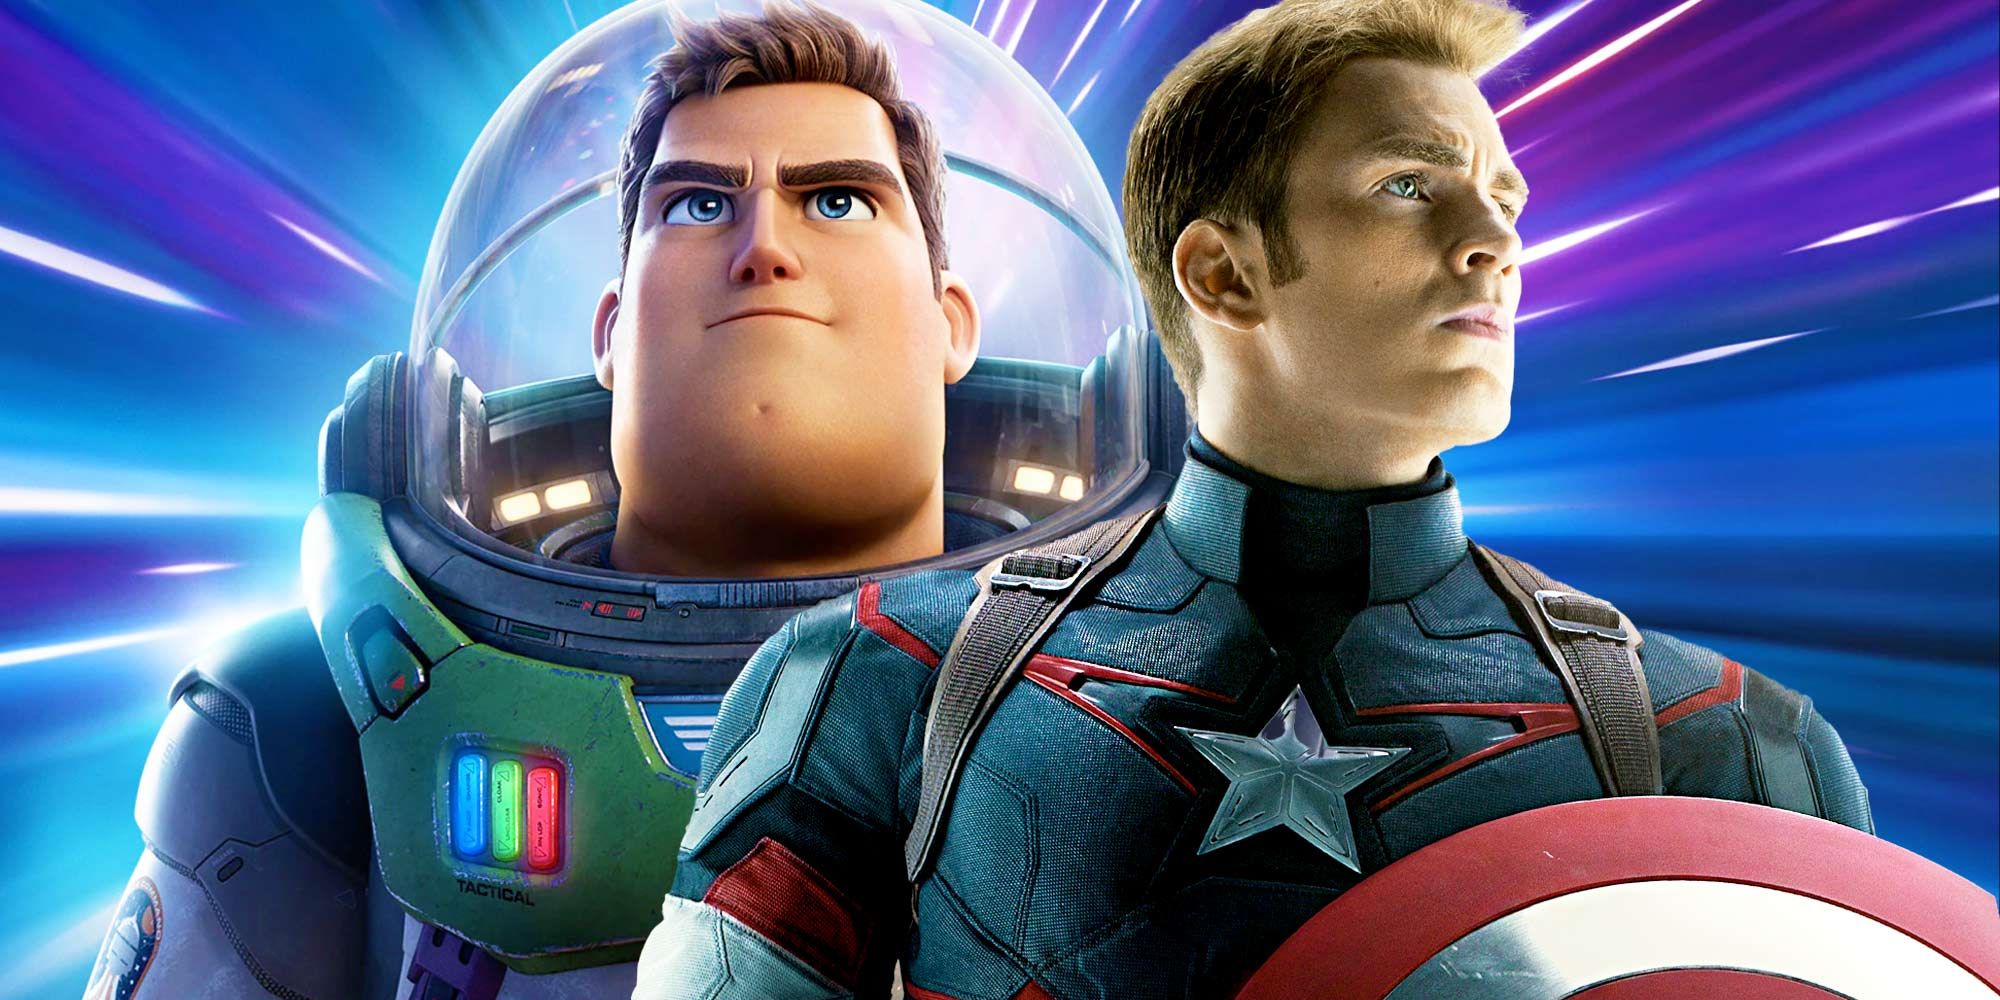 Chris Evans explica en qué se diferencia Buzz Lightyear del Capitán América